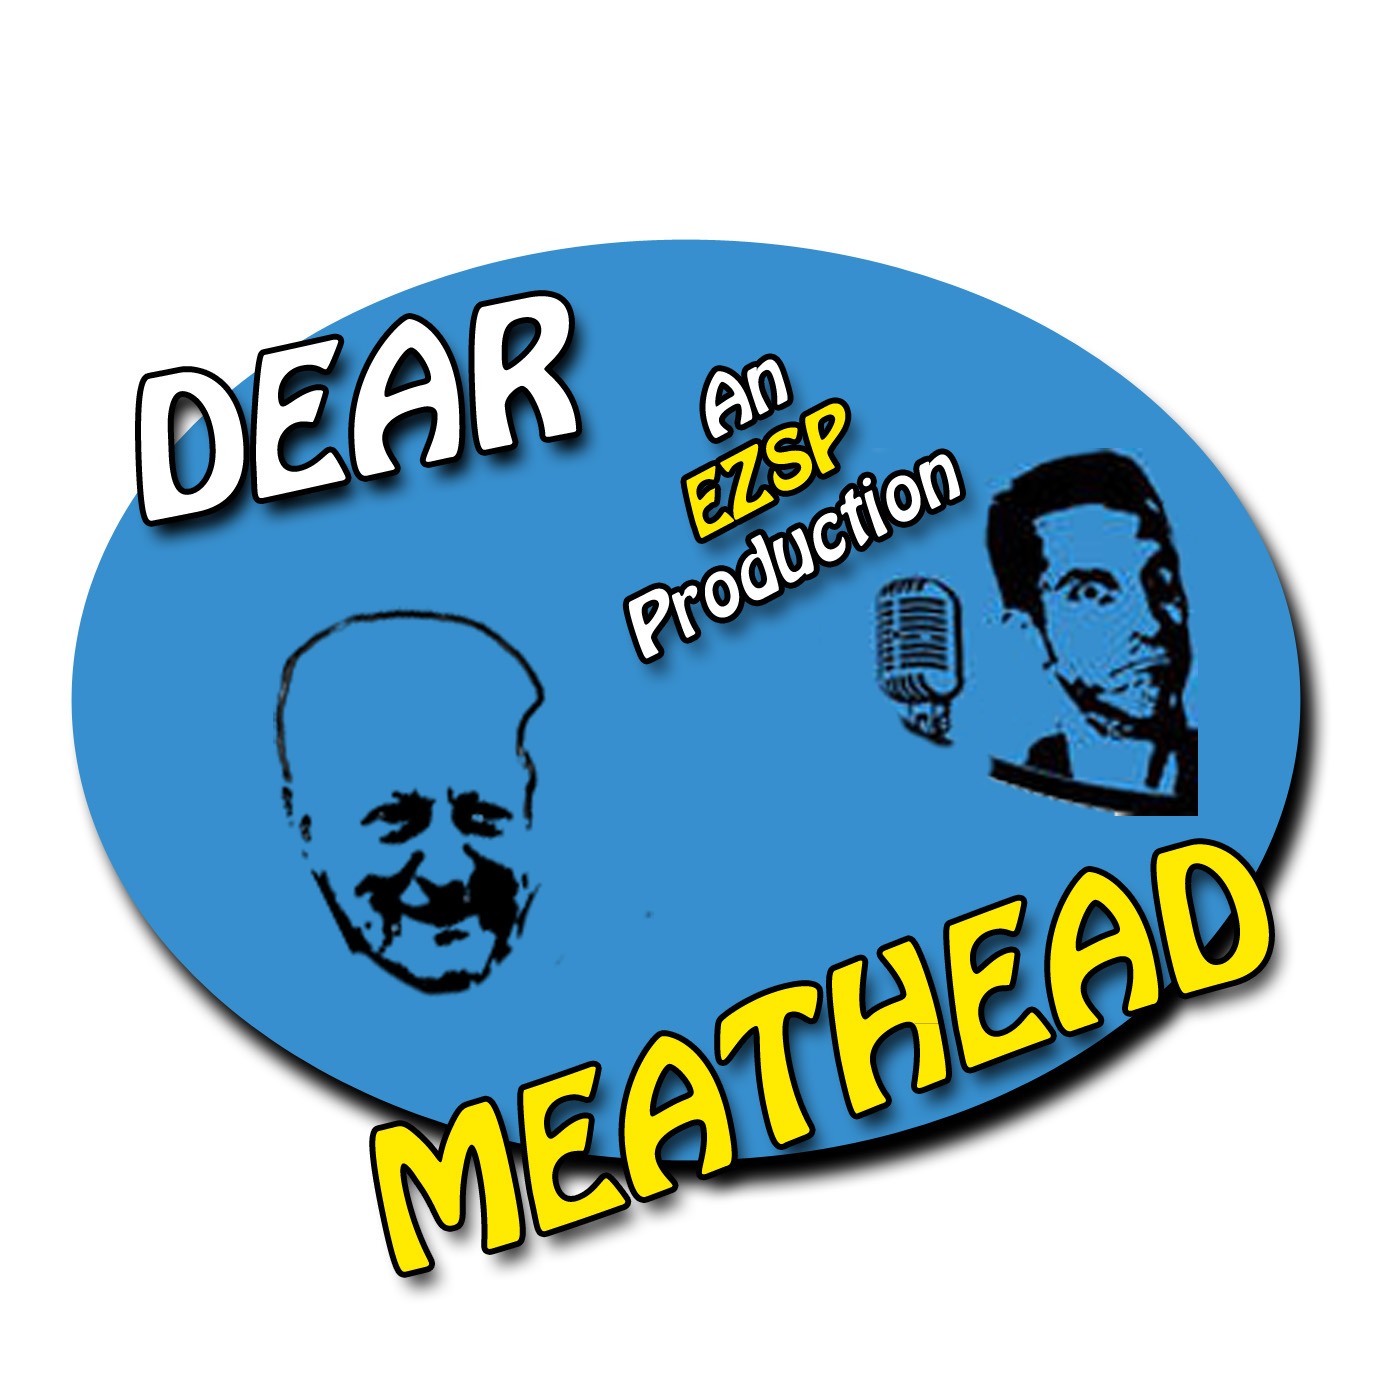 Dear Meathead June 29, 2022 - Dad on fireworks